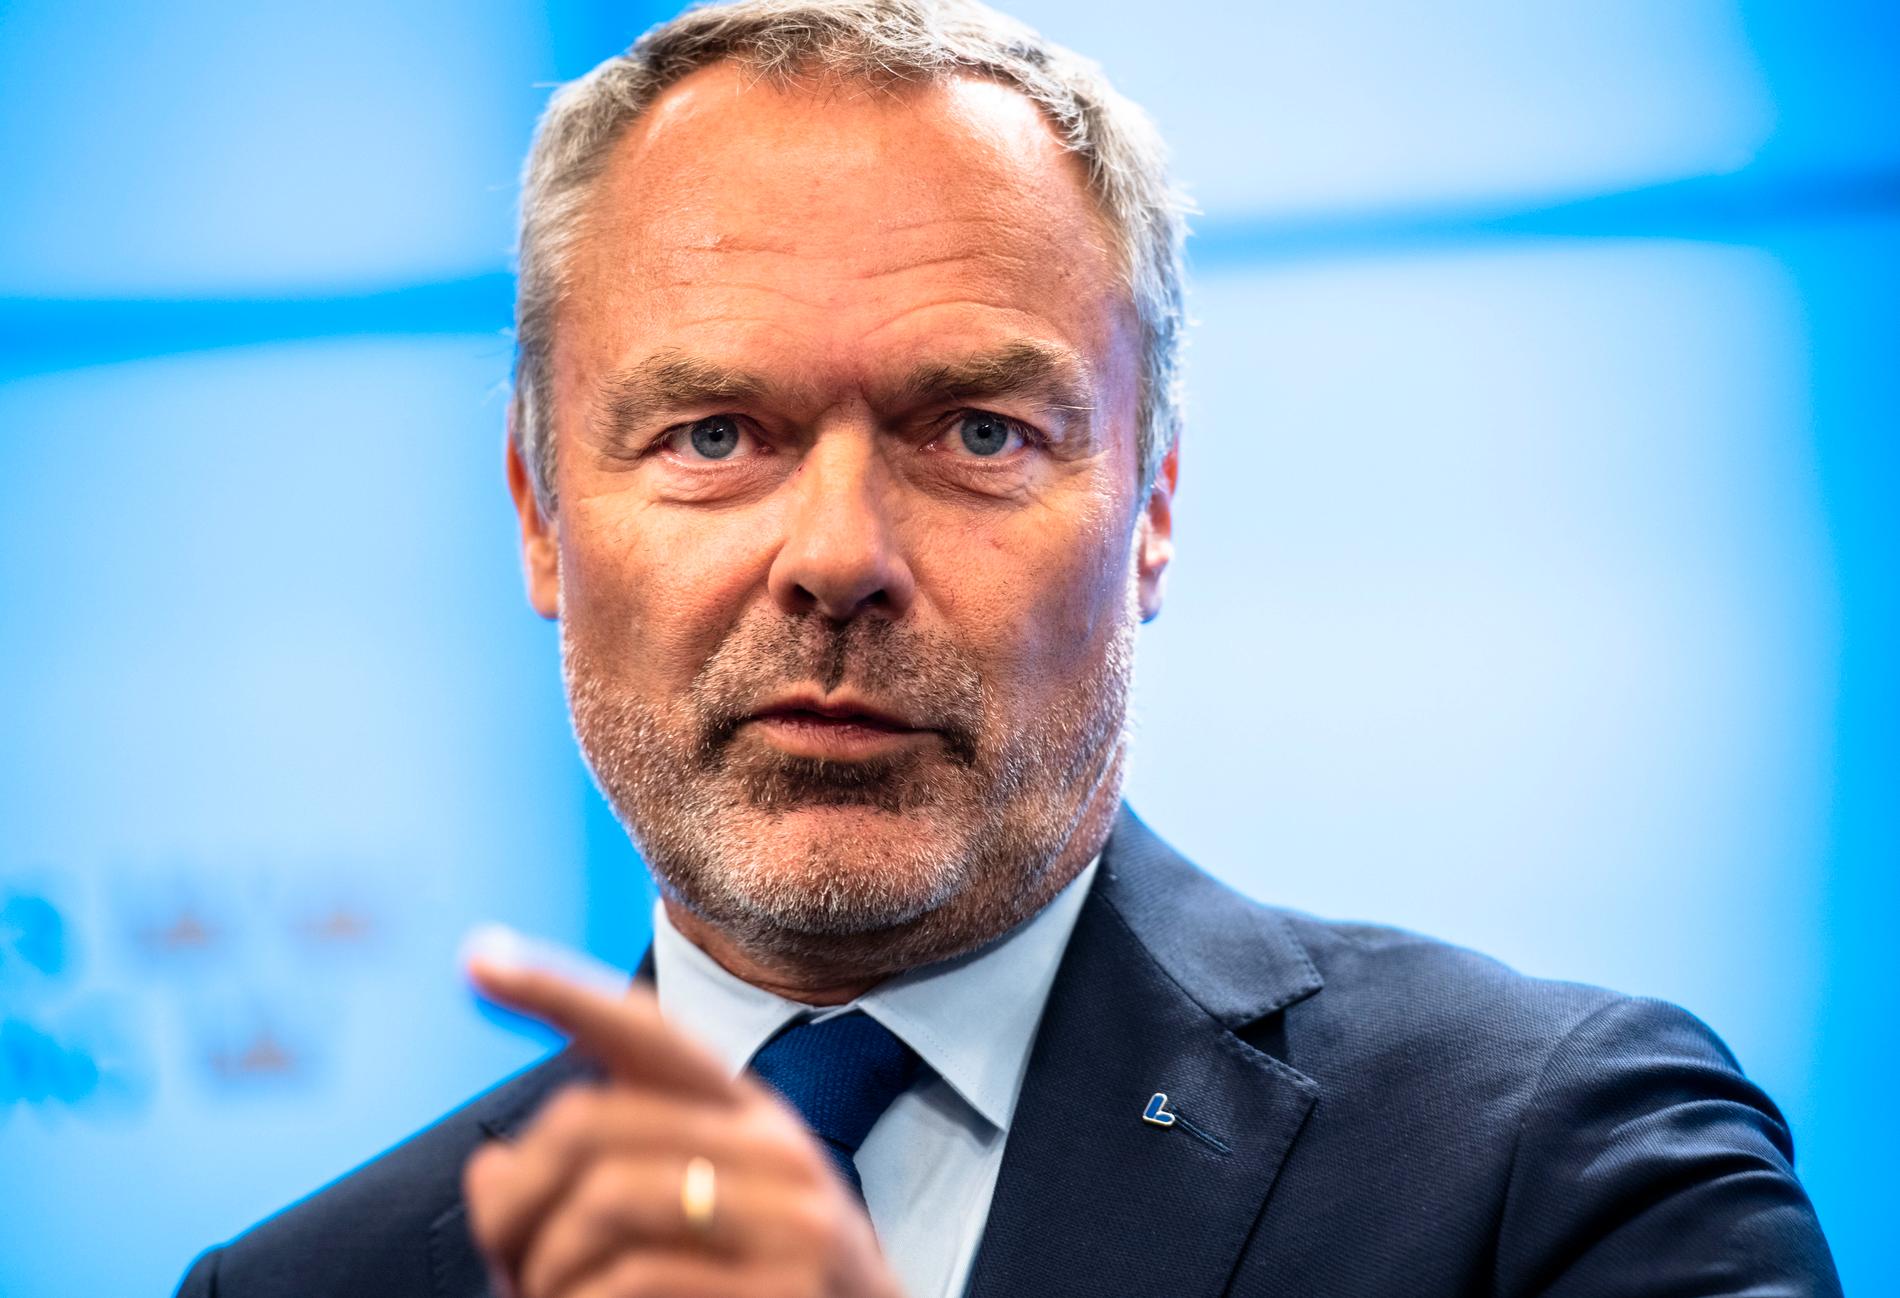 Även Jan Björklund har gett besked att det blir ett ”nej” till Ulf Kristerssons regering.